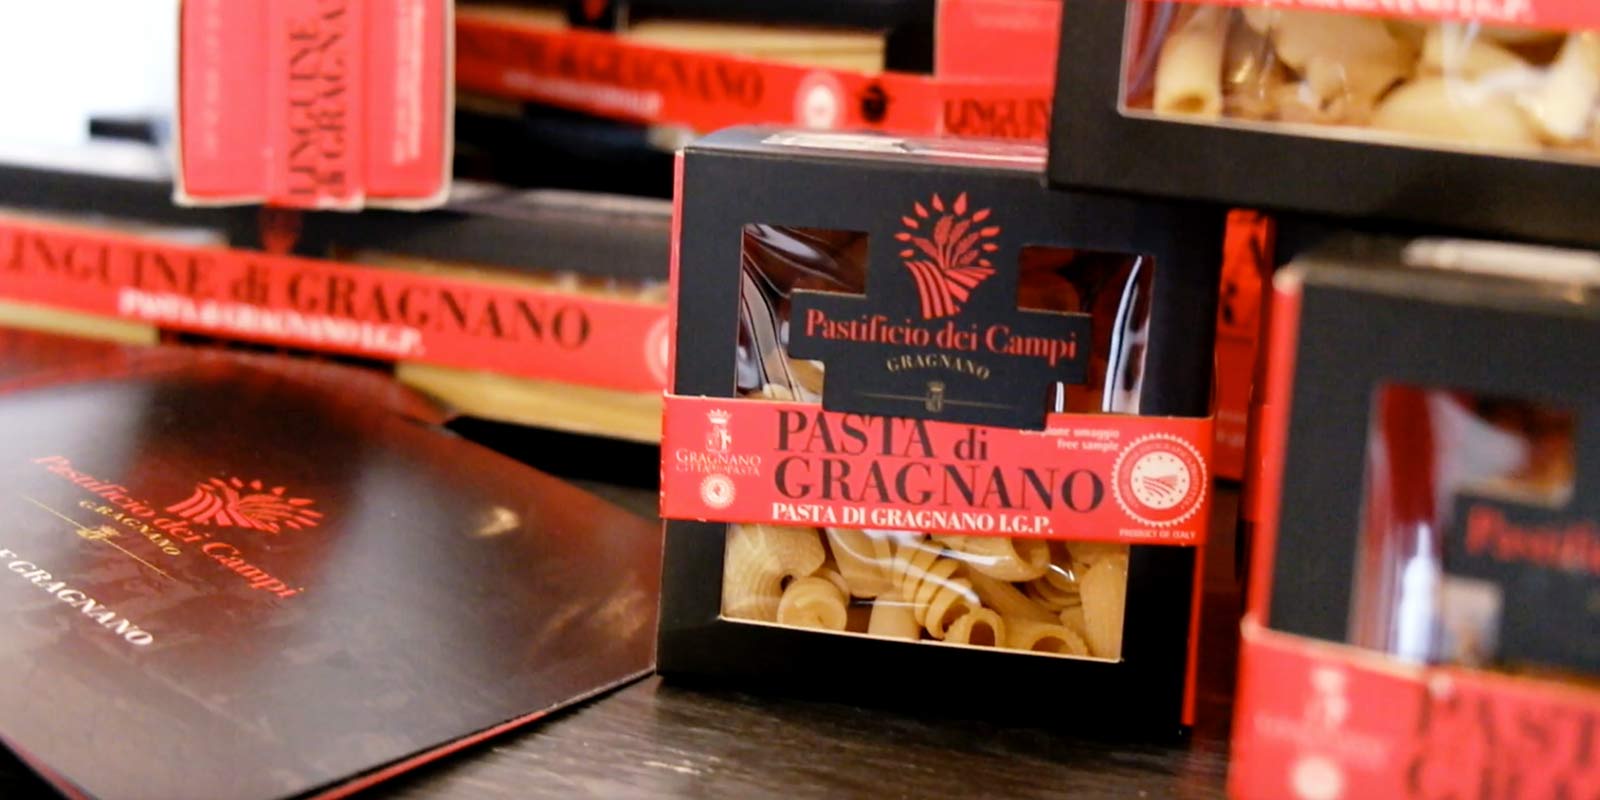 Pastifico dei Campi - Pasta di Gragnano IGP Pastificio dei Campi menghasilkan beberapa karya klasik Italia dan beberapa kreasi orisinal. Pasta ini terbuat dari 100% semolina gandum durum Italia dan diekstrusi menggunakan cetakan perunggu.